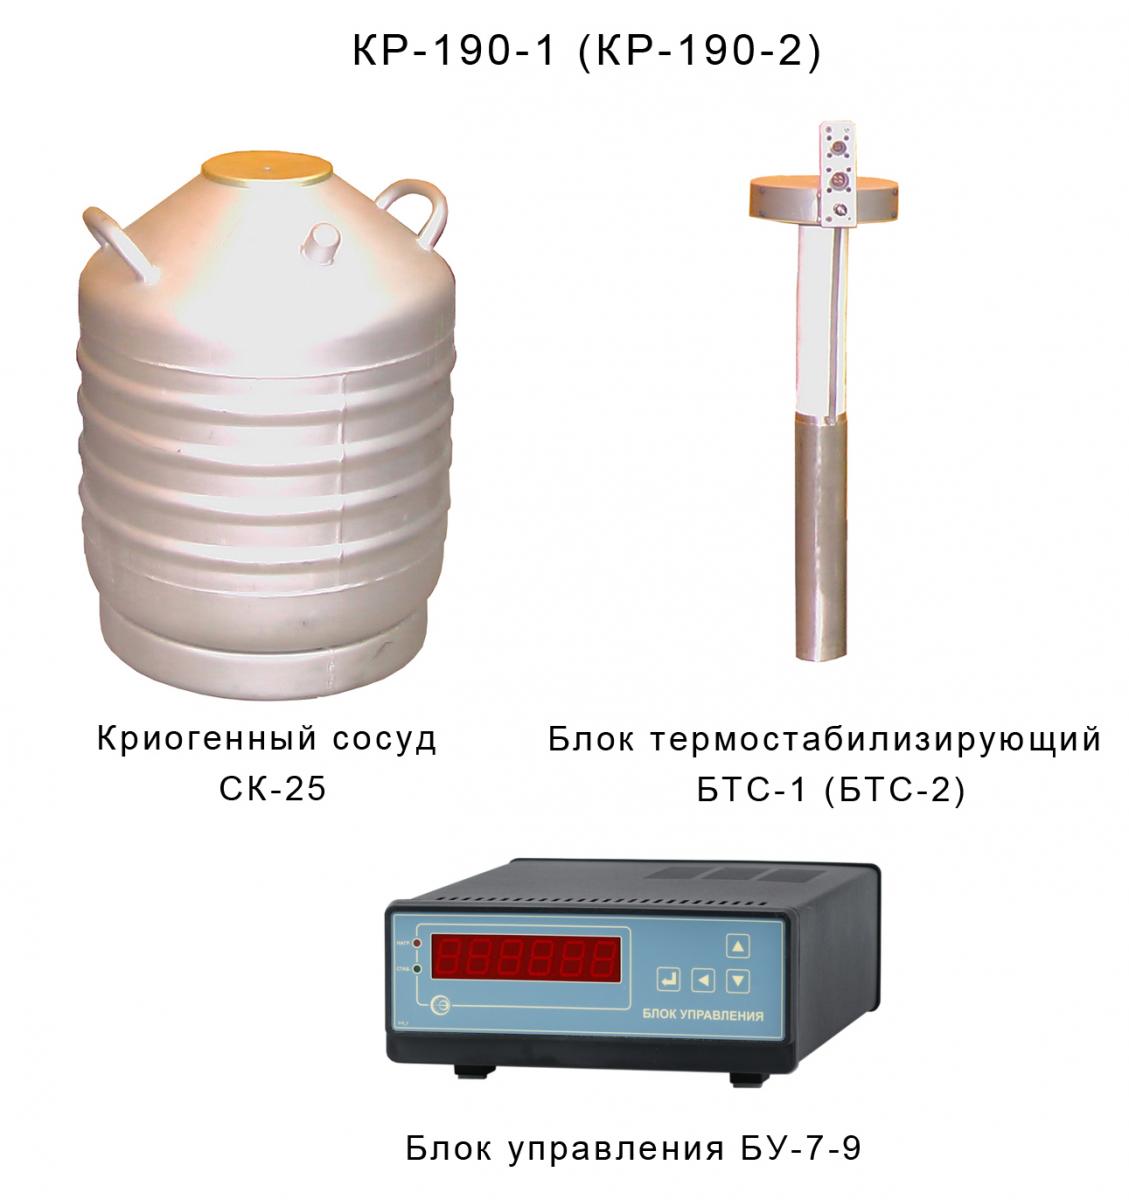 Криостат КР-190